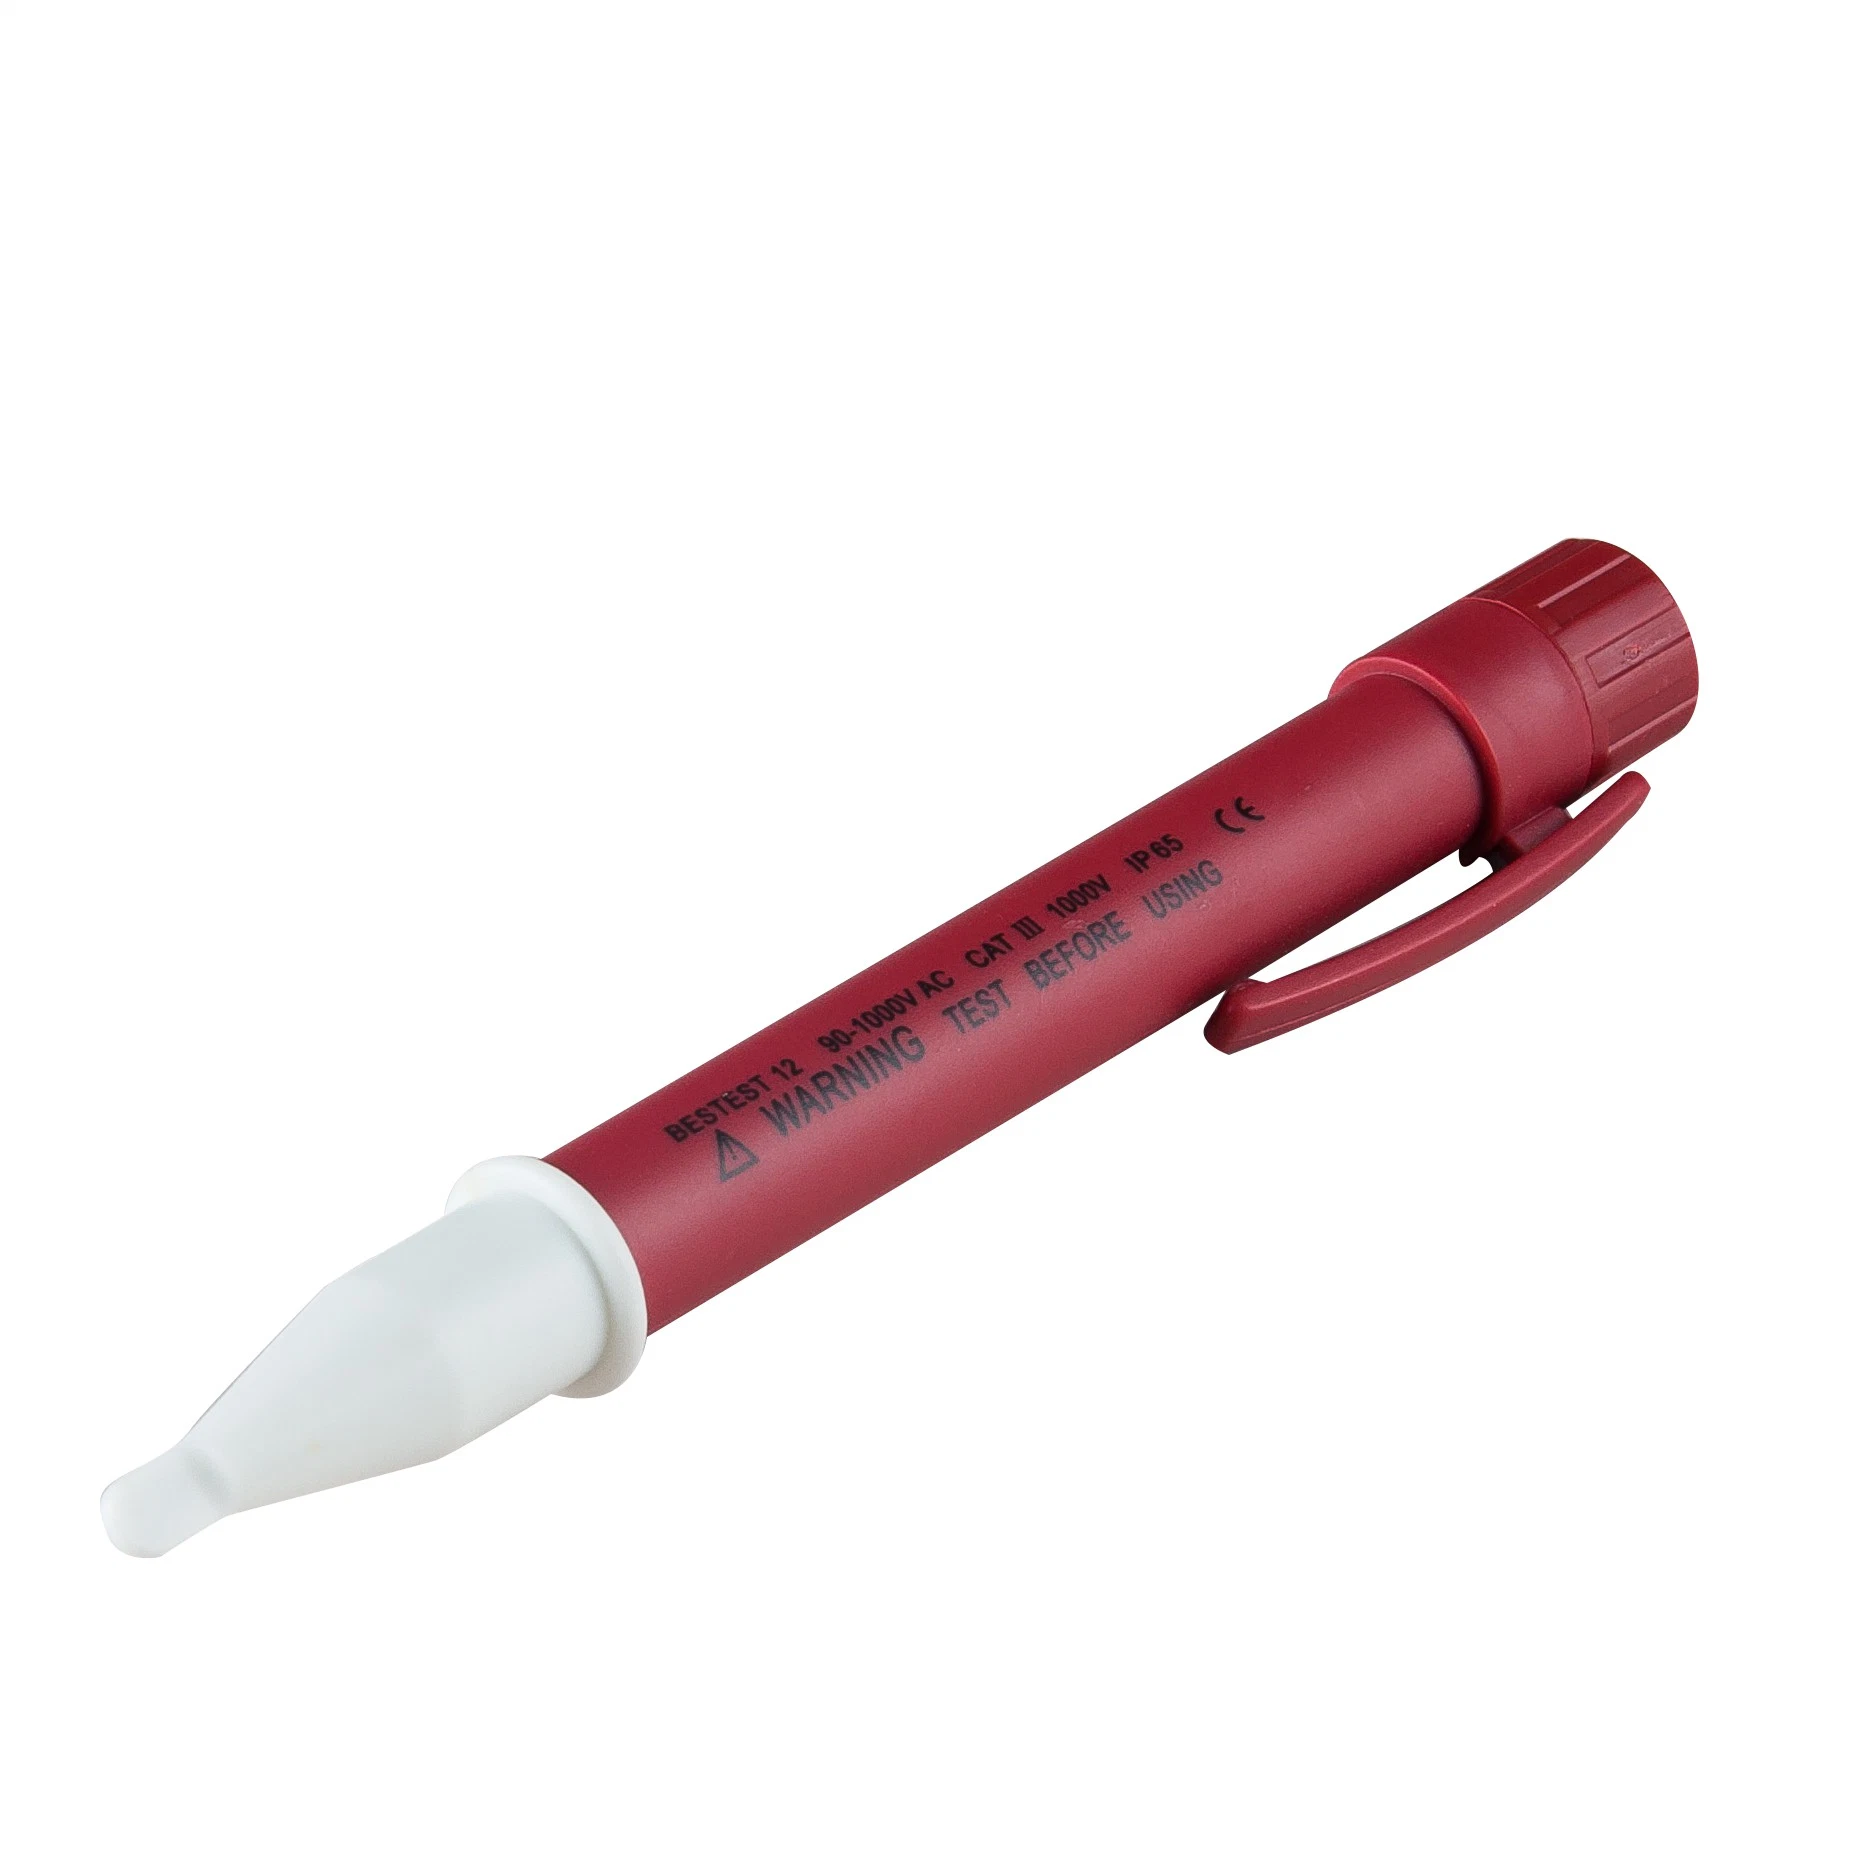 Voltage Detector Electric Tester Pen Non-Contact